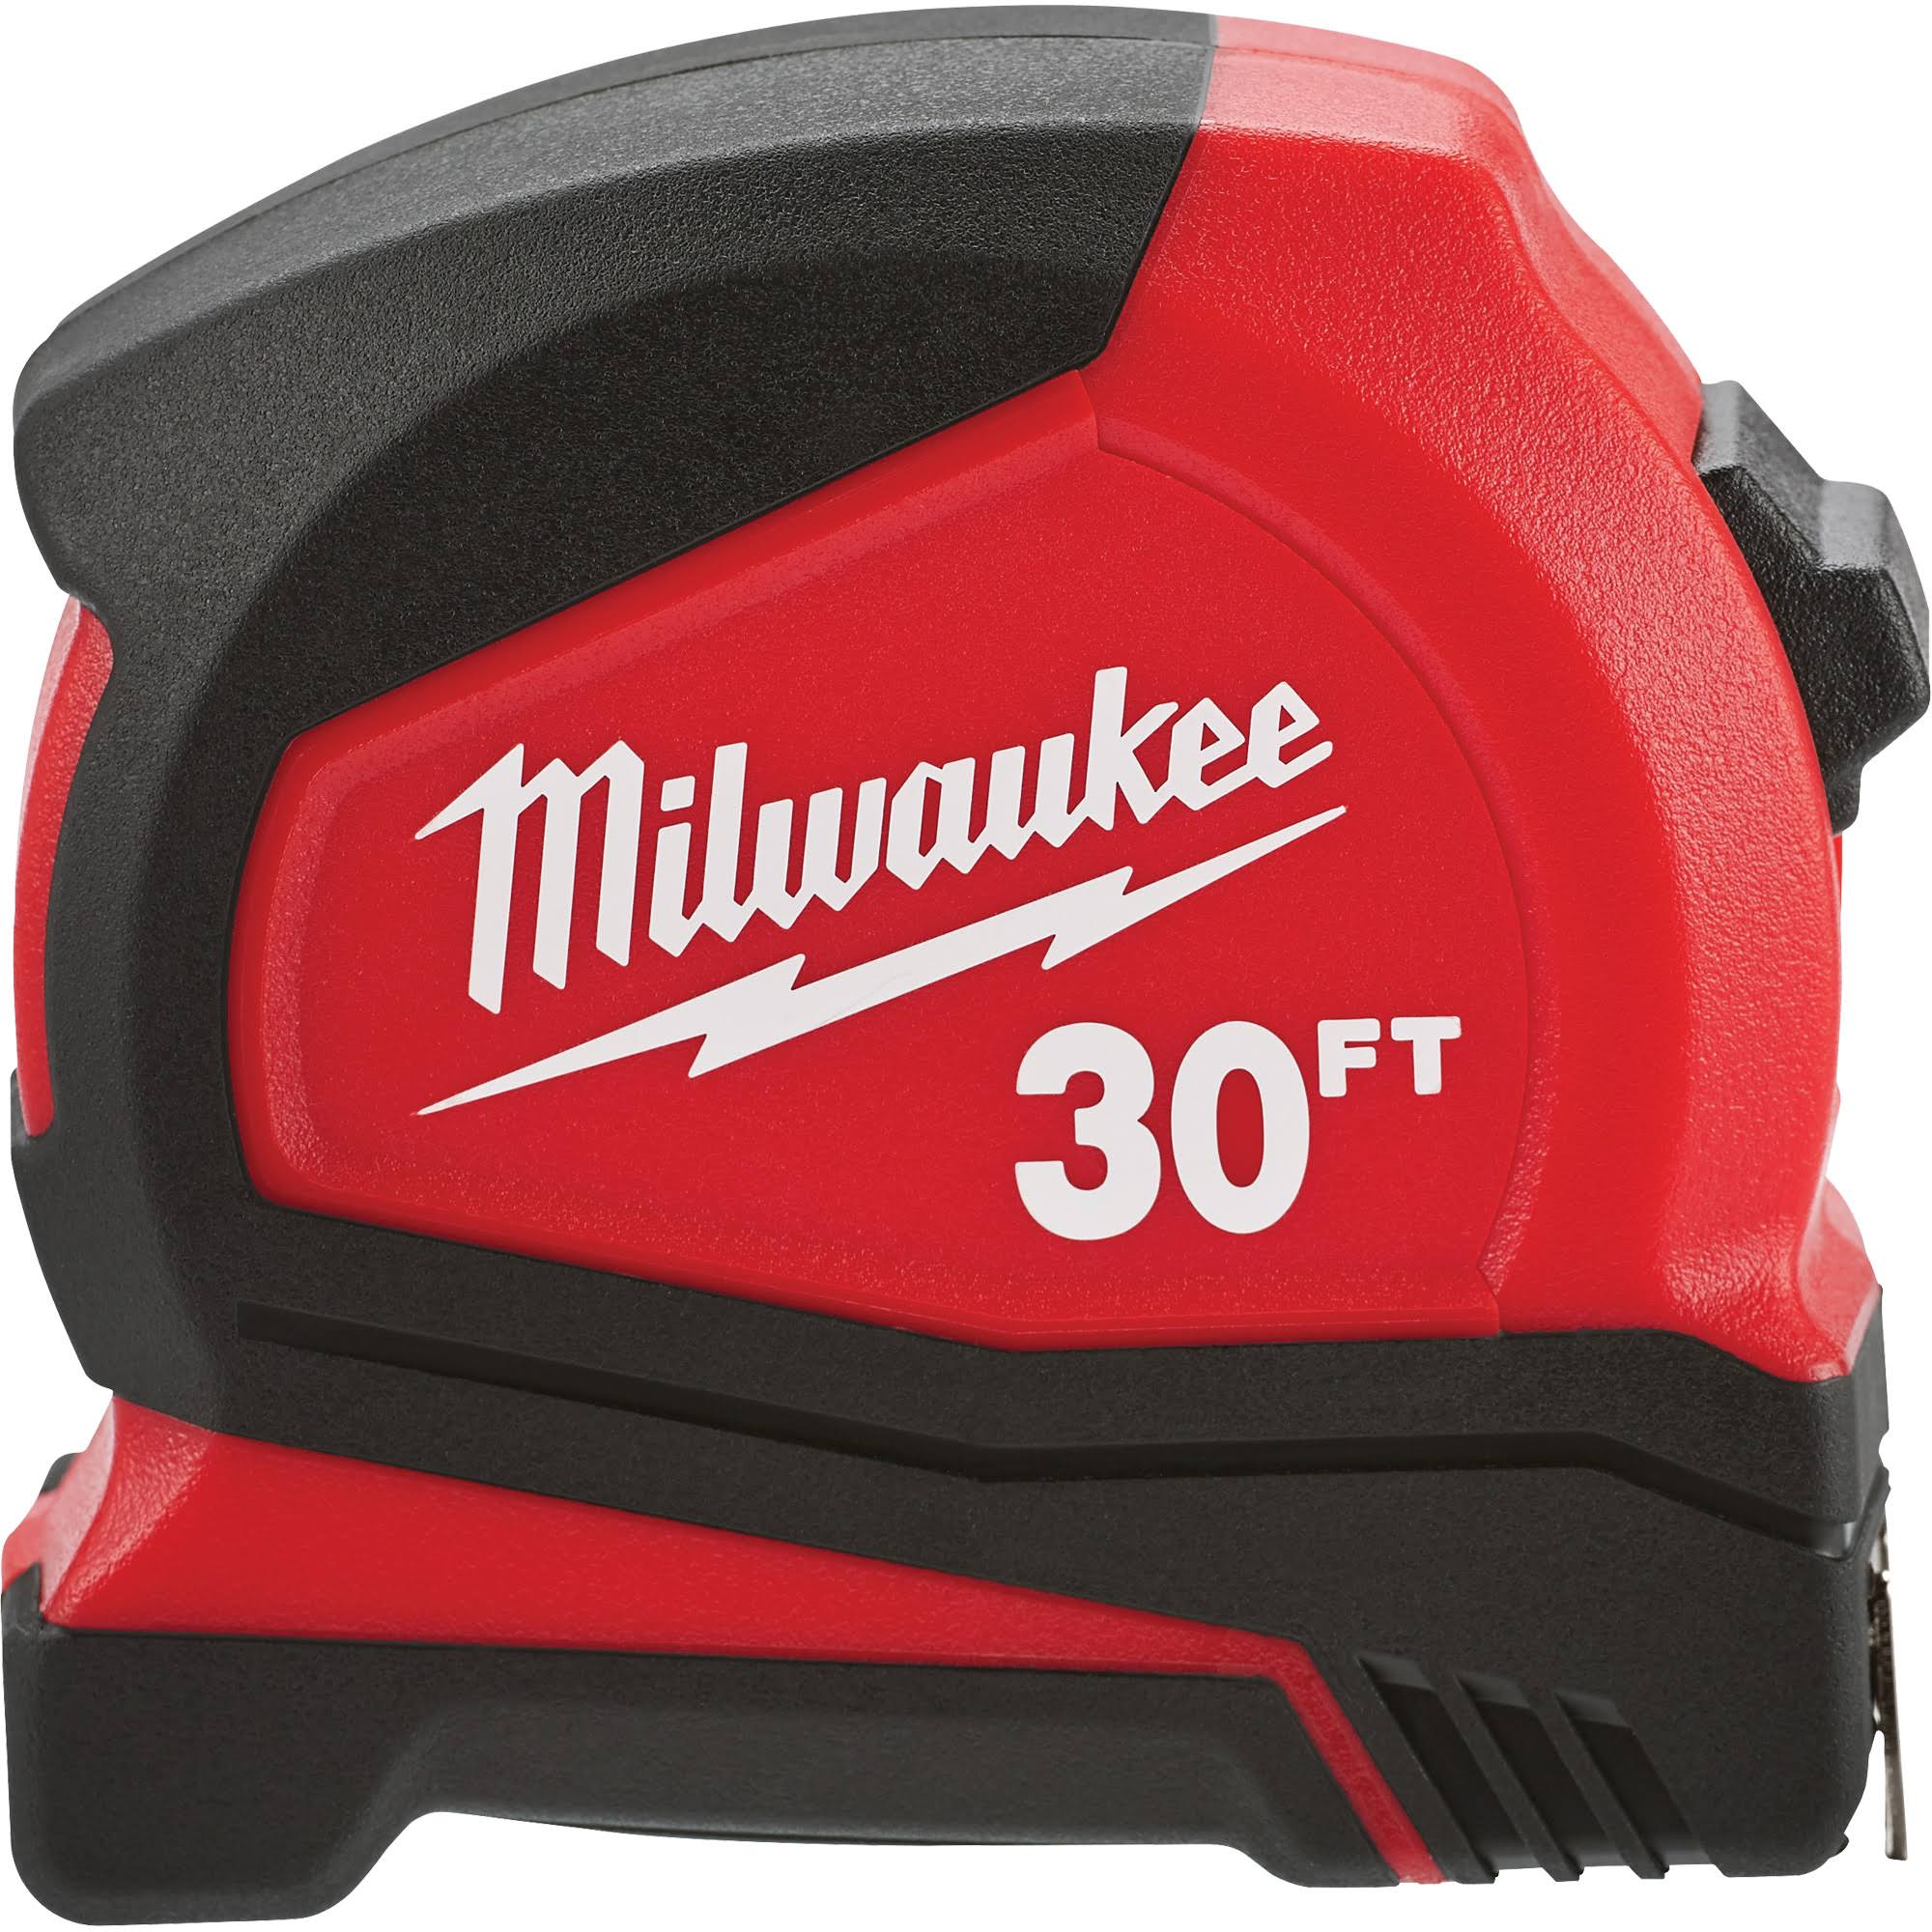 Milwaukee Compact Tape Measure - 30'